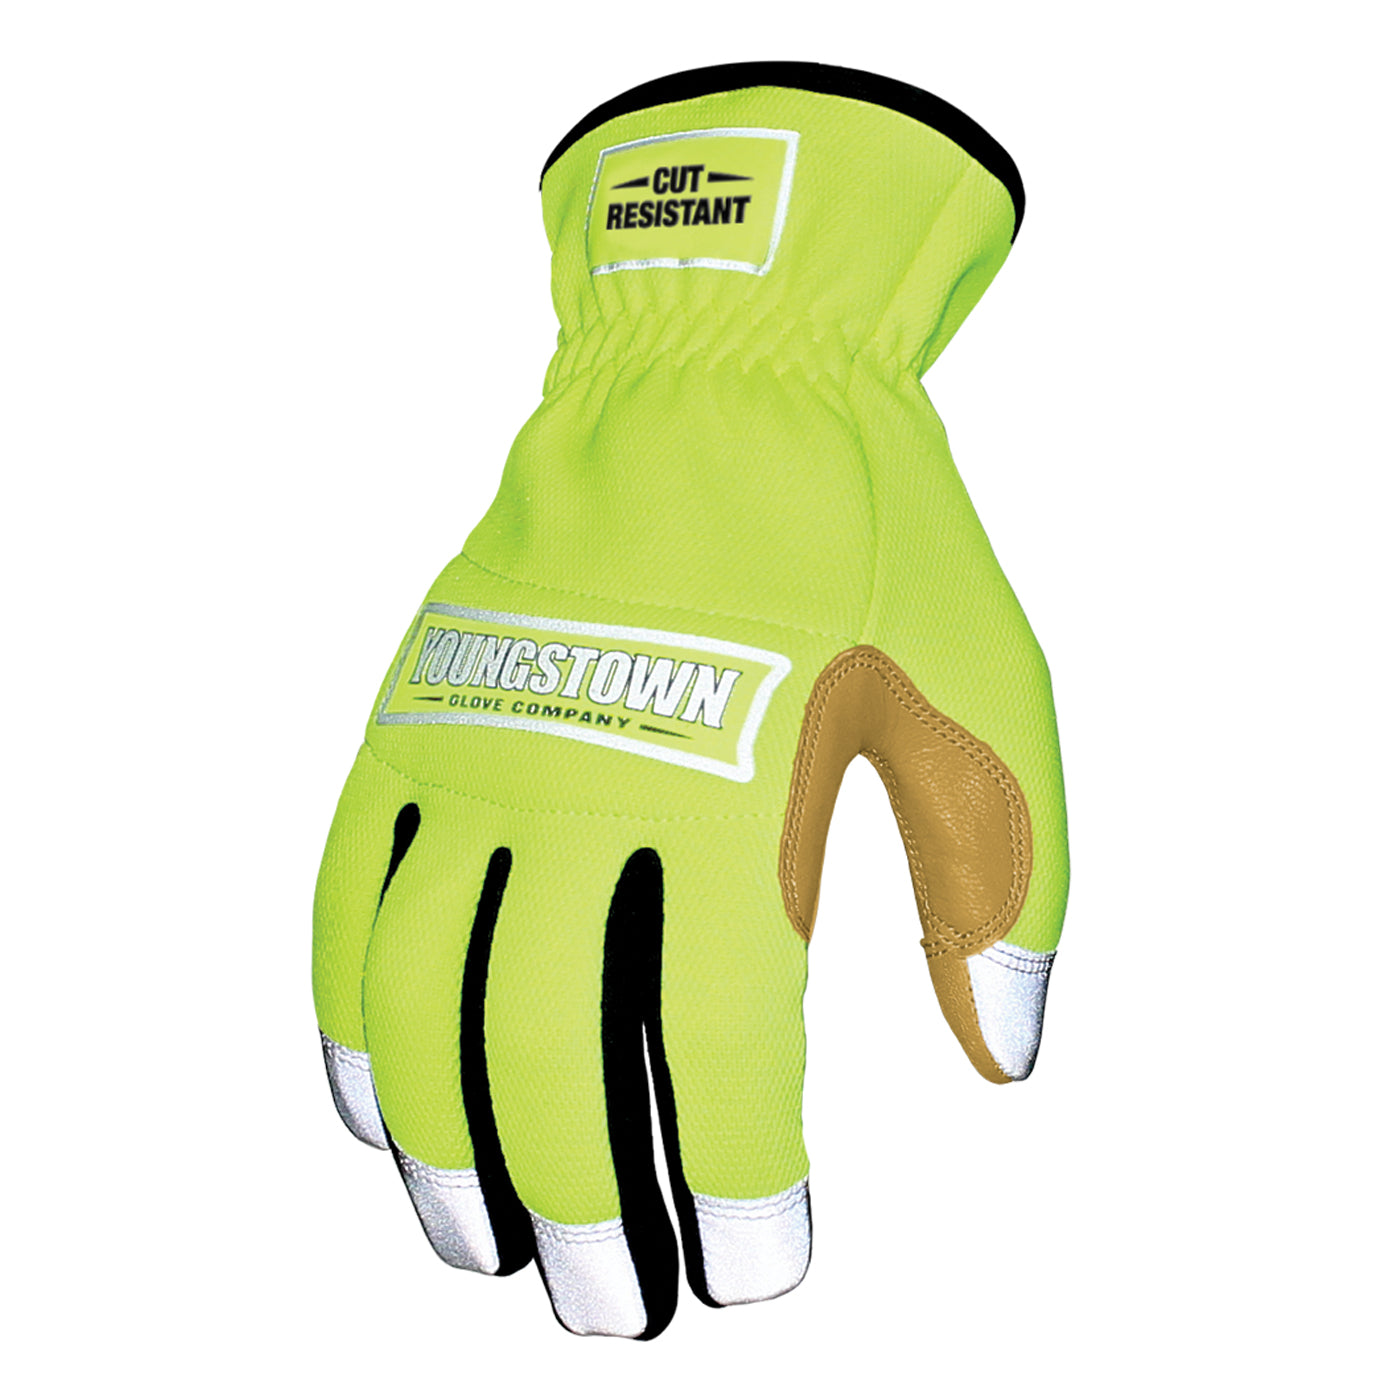 Hi-Viz Lime Mechanical Glove - Safety Imprints